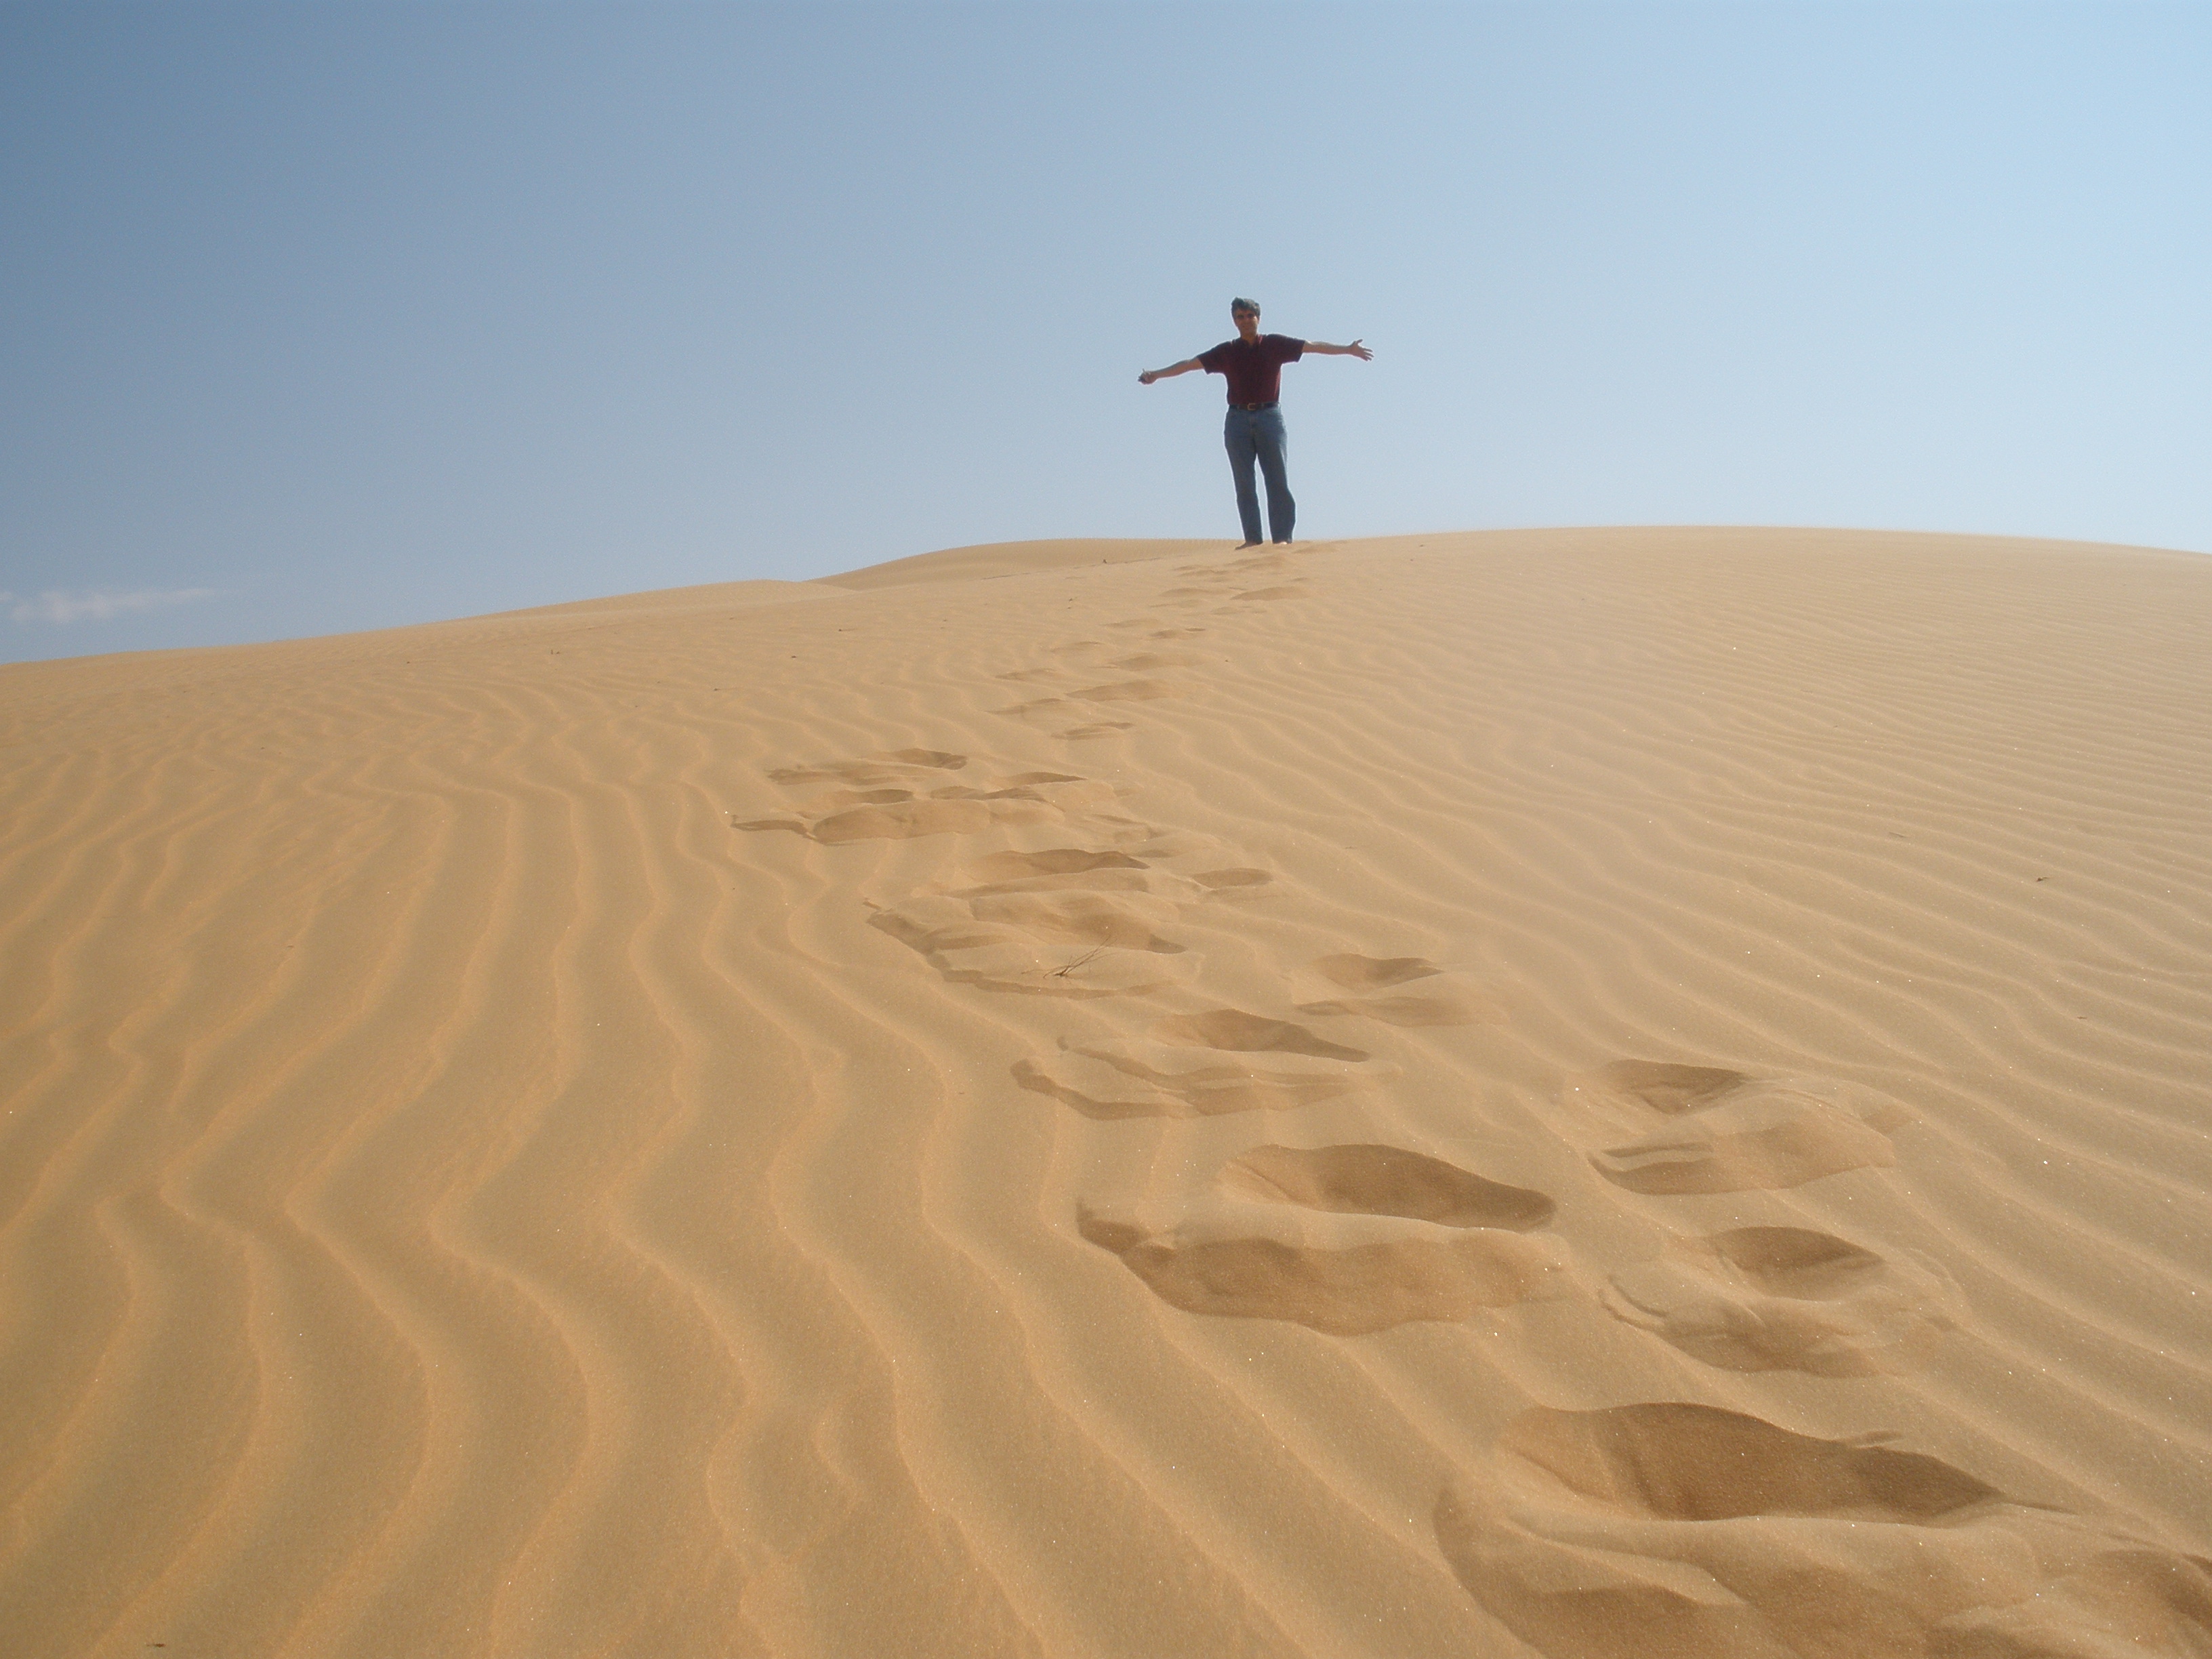 Liwa Sand Dunes